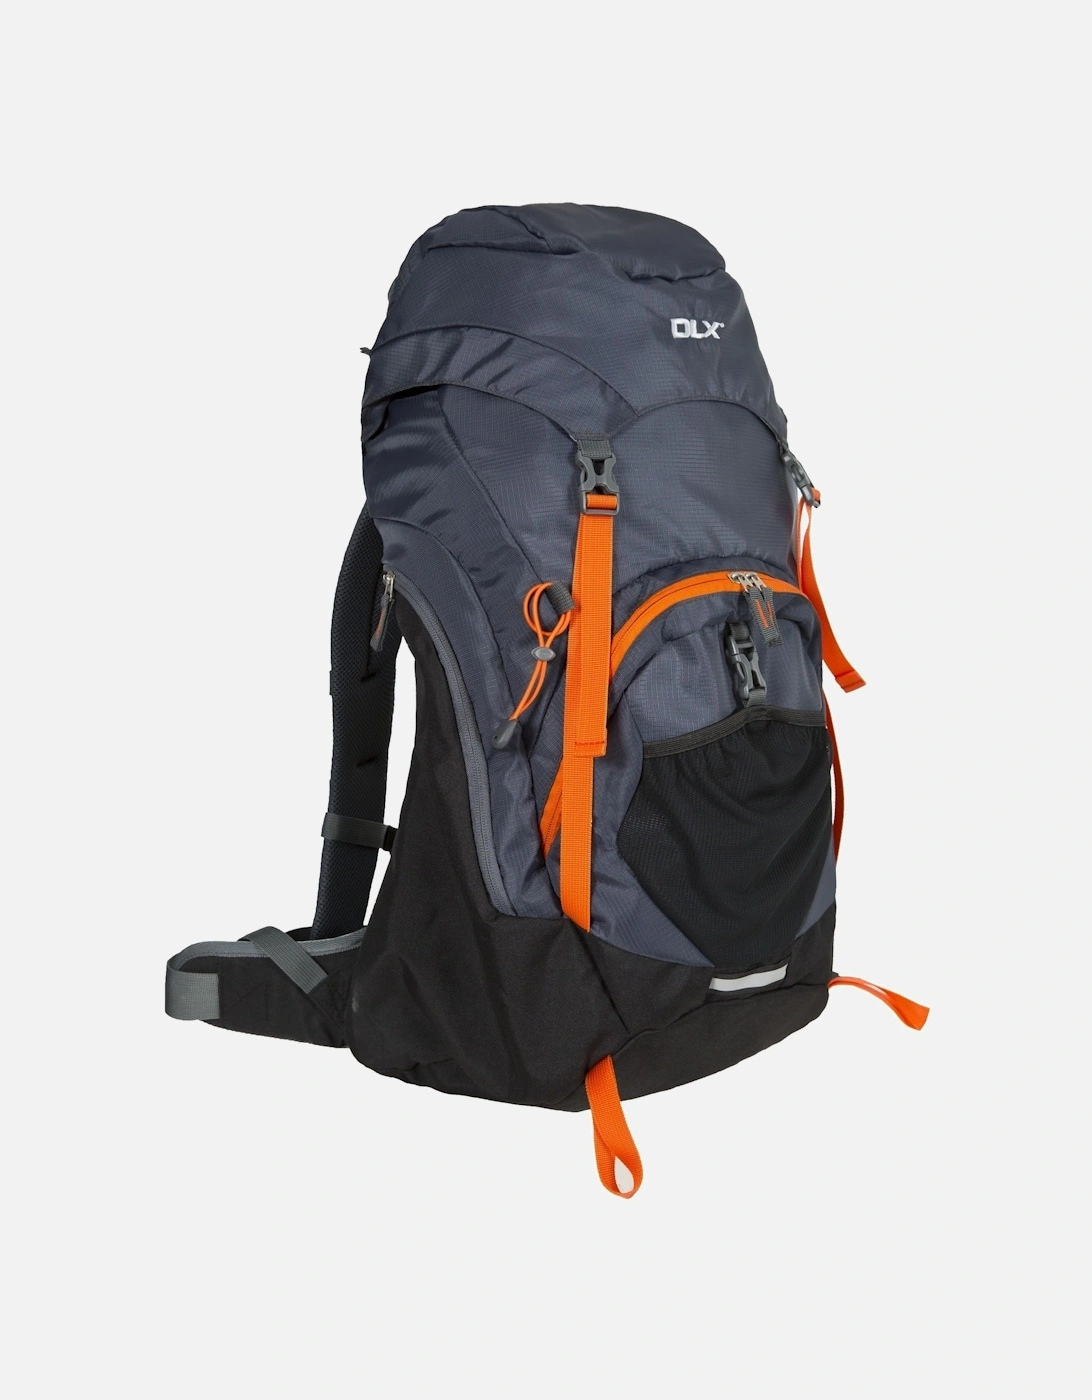 Twinpeak 45 Litre DLX Hiking Rucksack/Backpack